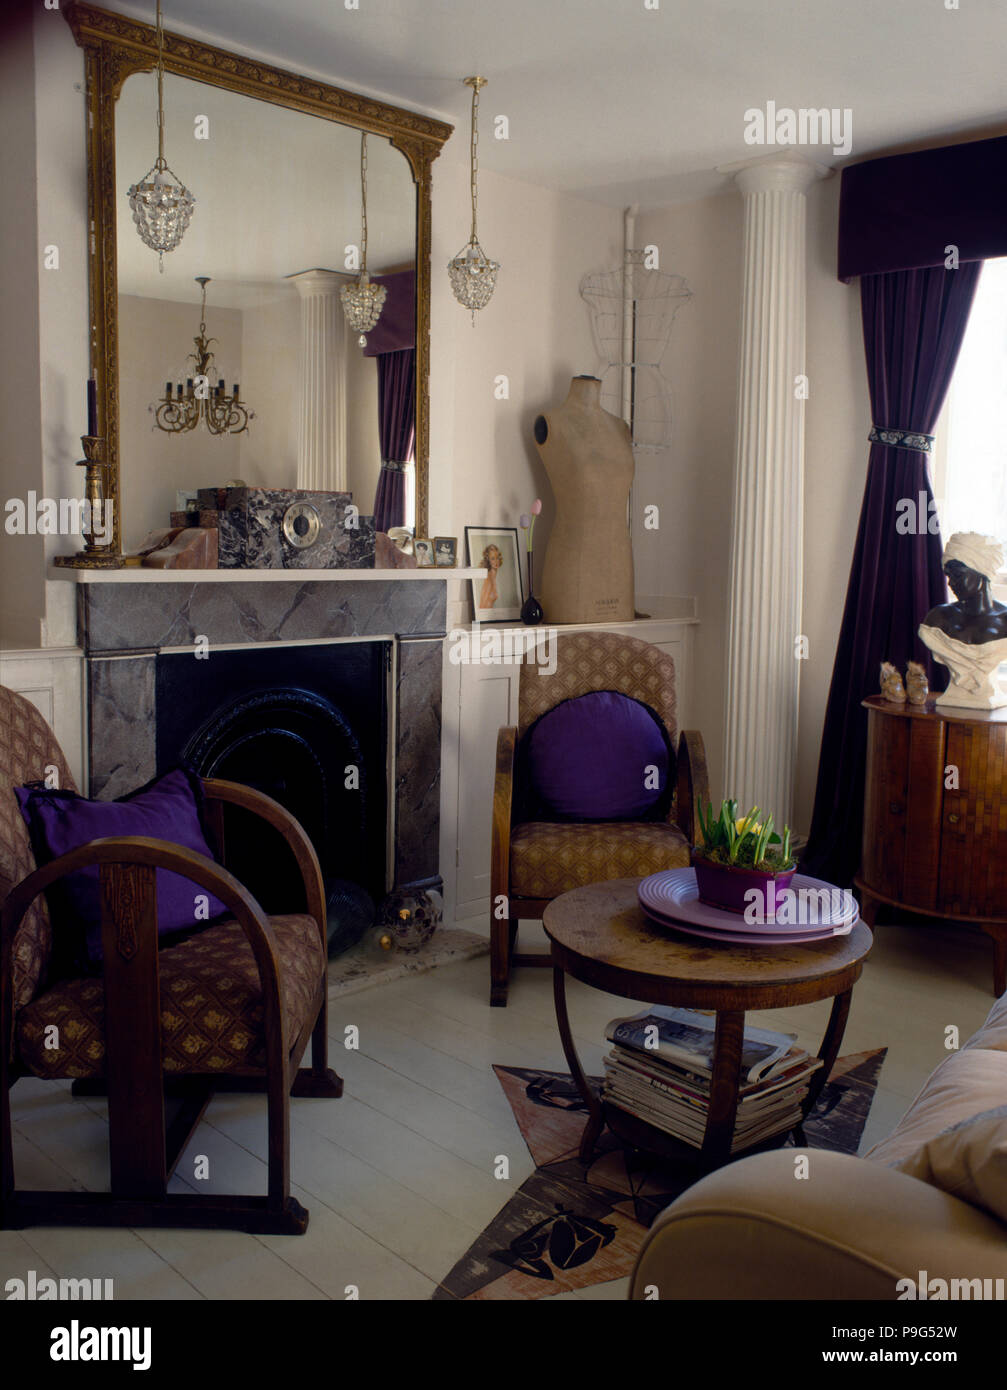 Chaises de style années 40 avec coussins violets dans un salon rétro avec un miroir antique au-dessus d'un effet cheminée en marbre Banque D'Images